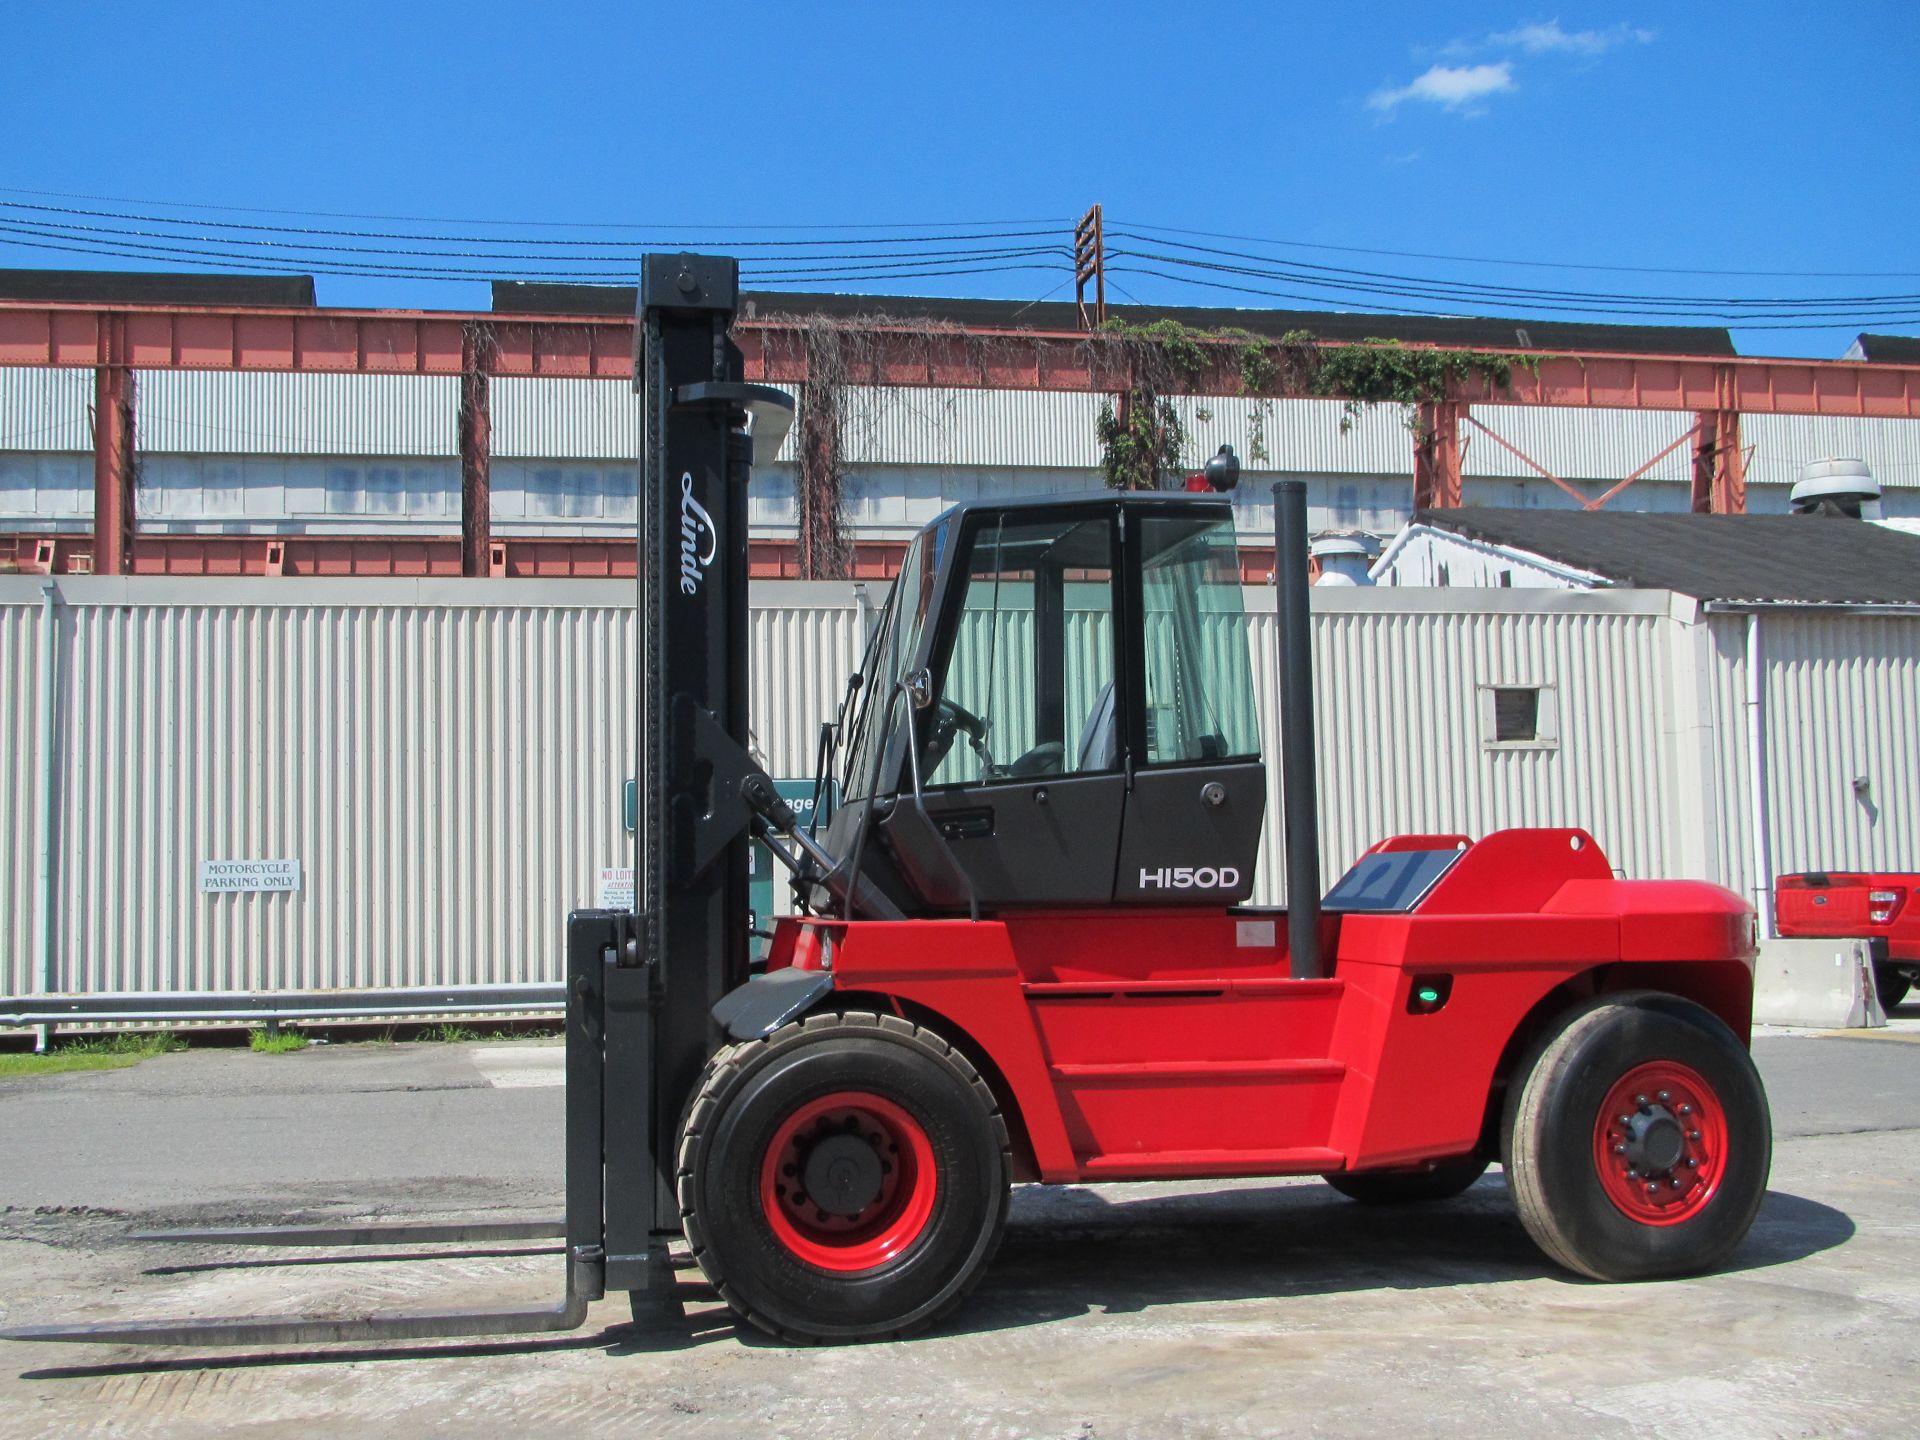 Linde H150D 30,000lb Forklift - Image 2 of 12